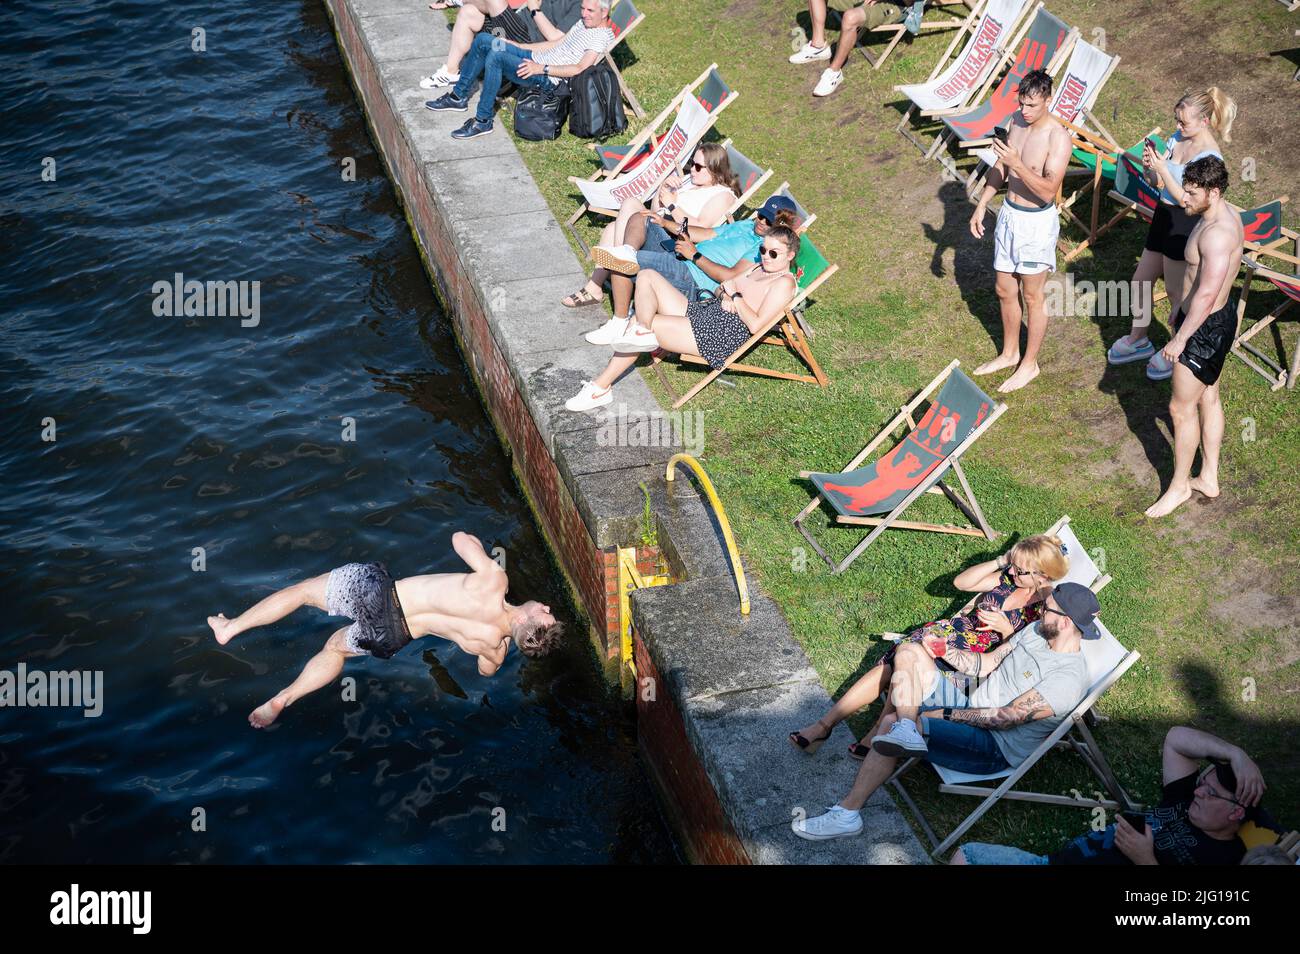 03.07.2022, Berlin, Allemagne, Europe - Un jeune homme saute de la rive du Ludwig-Erhard-Ufer dans la rivière Spree fraîche lors d'une chaude journée d'été. Banque D'Images